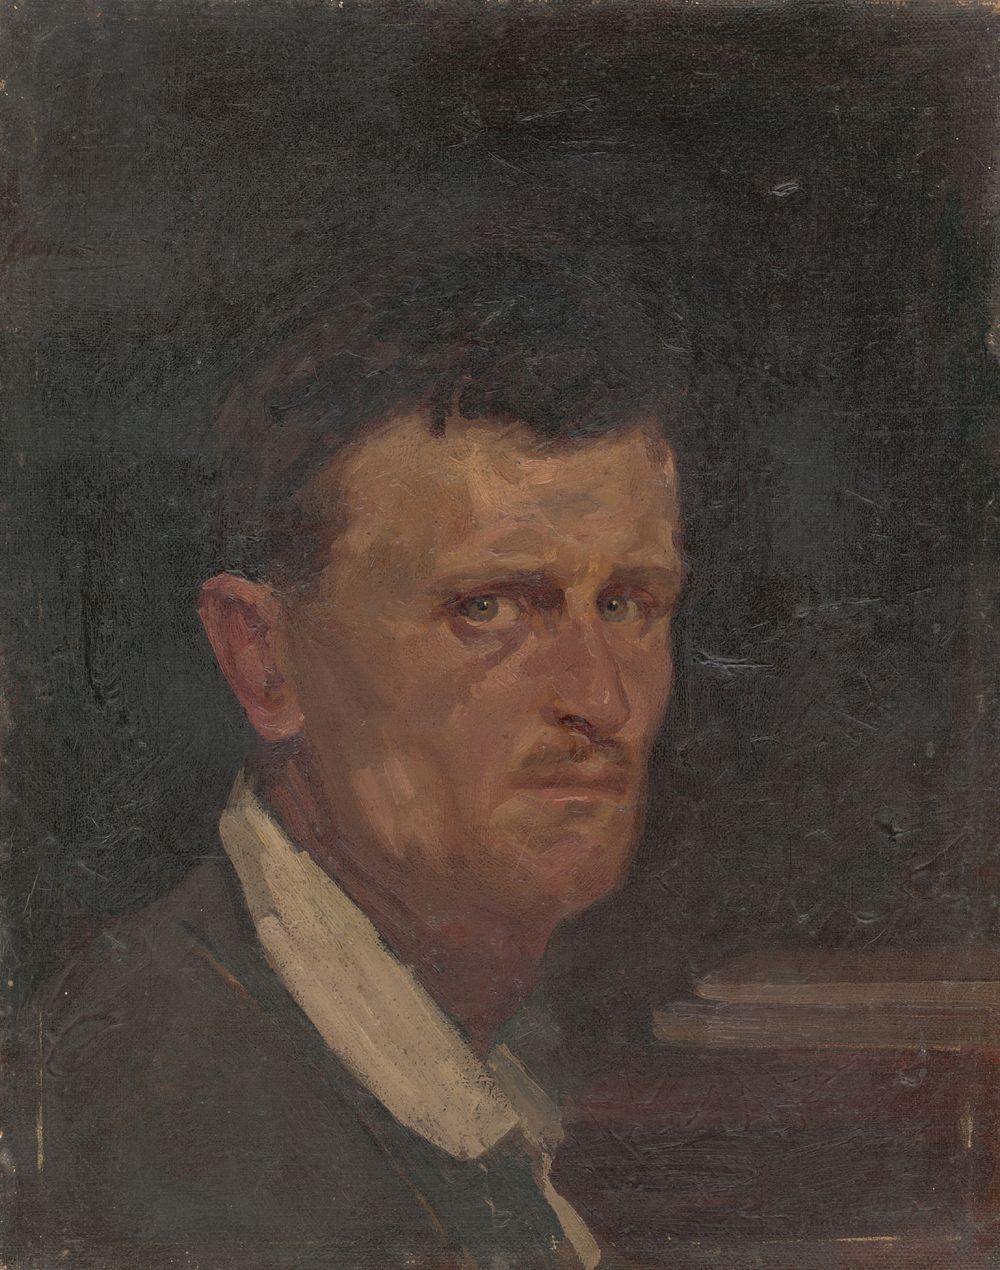 Self-portrait in three quarter profile